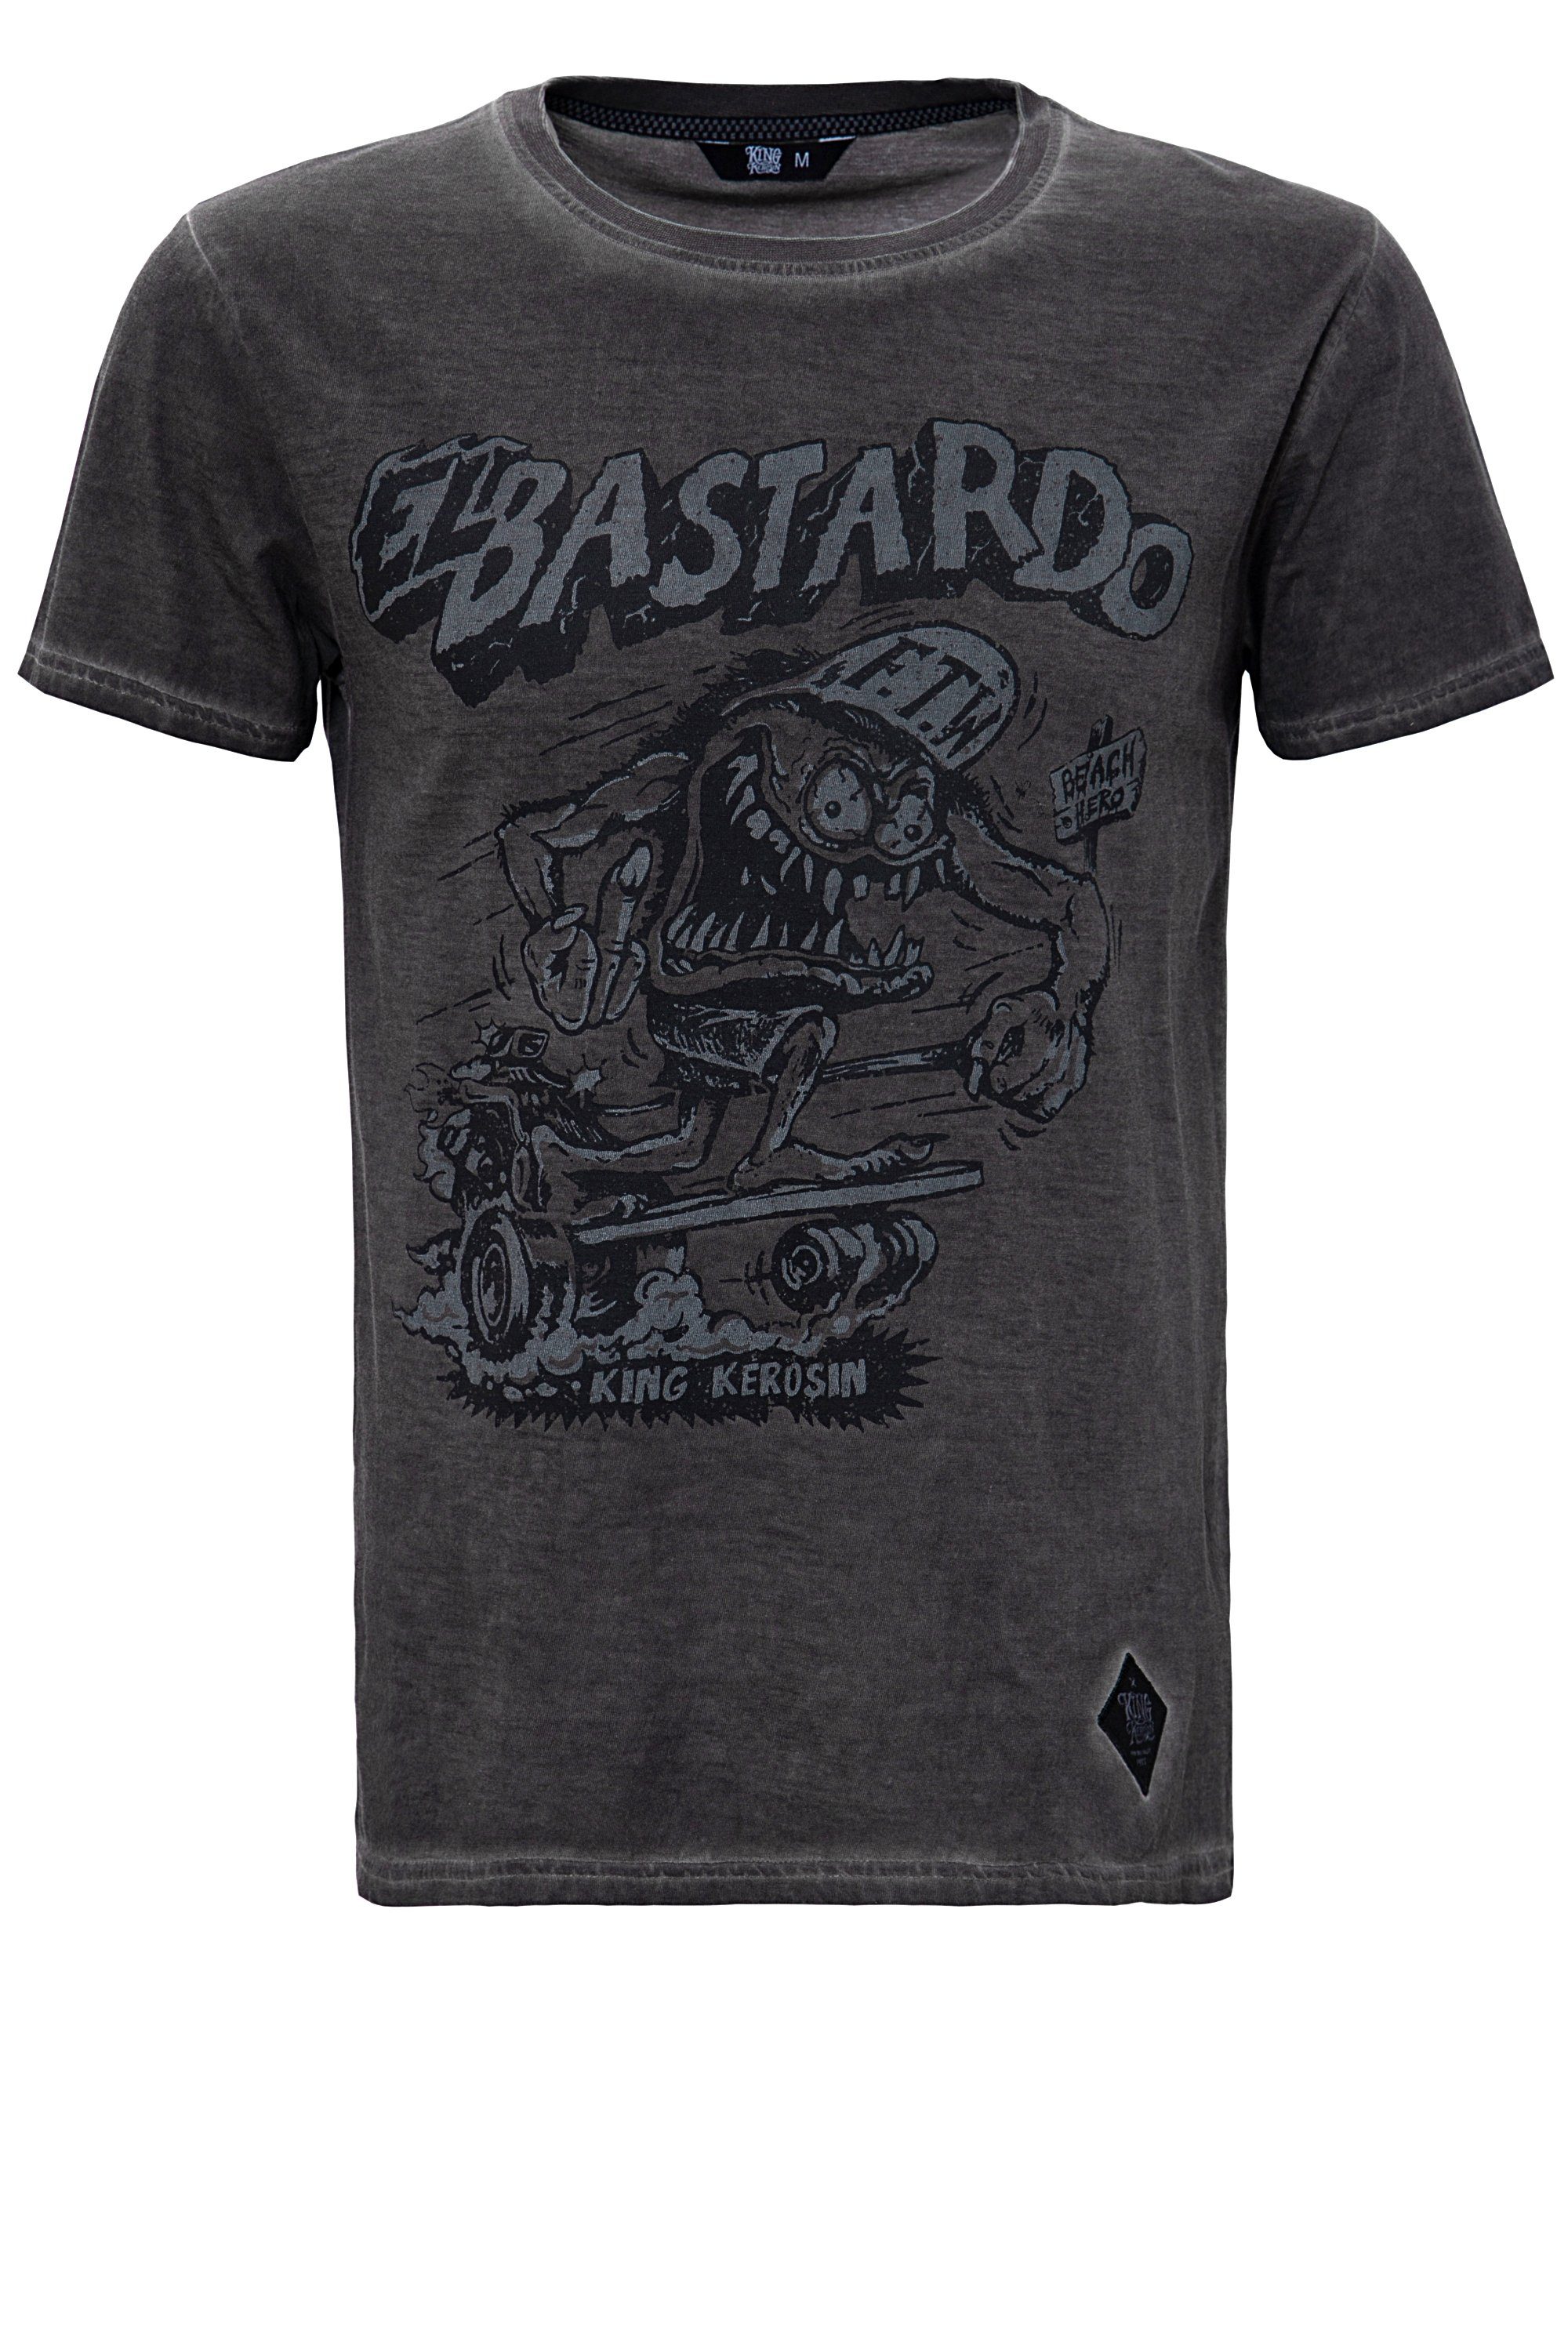 El Bastardo Look im T-Shirt Used KingKerosin